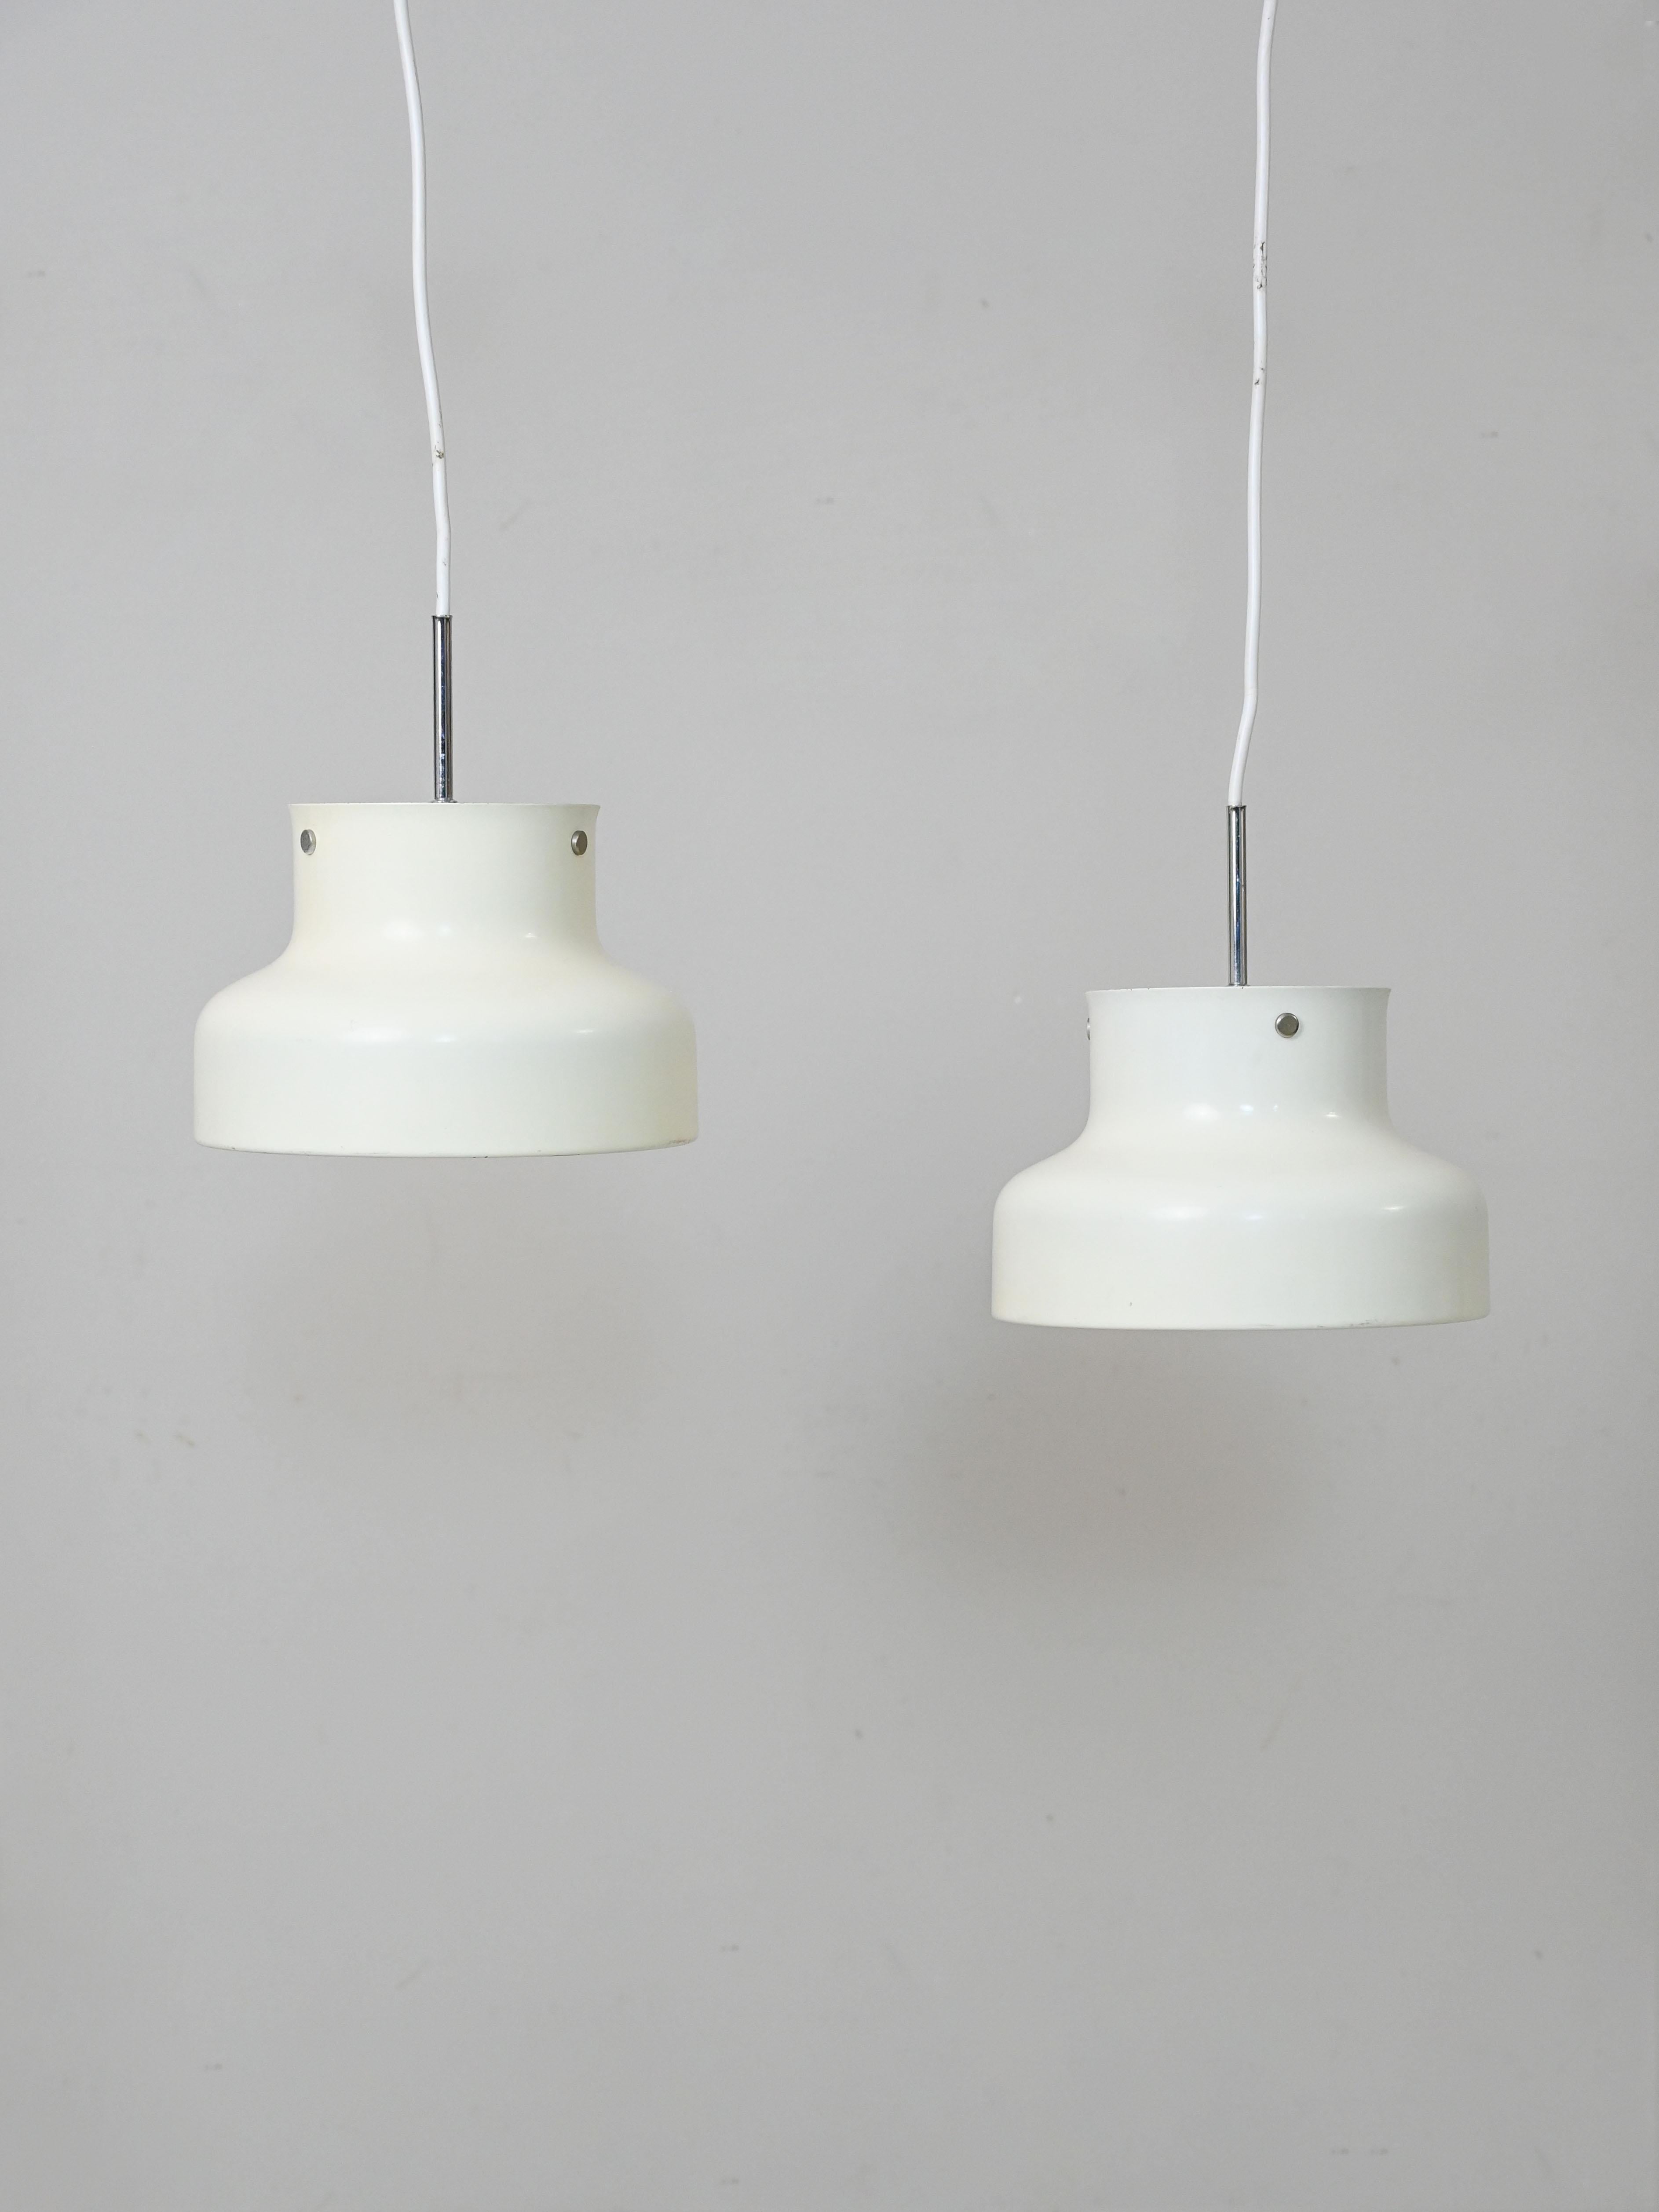 Paire de lampes suspendues Design/One conçues par Pehrson pour Ateljé Lyktan dans les années 1960. 
Cet ensemble de deux lampes est la plus petite version parmi les modèles existants, avec un diamètre de 25 cm. L'abat-jour en métal fait de ces